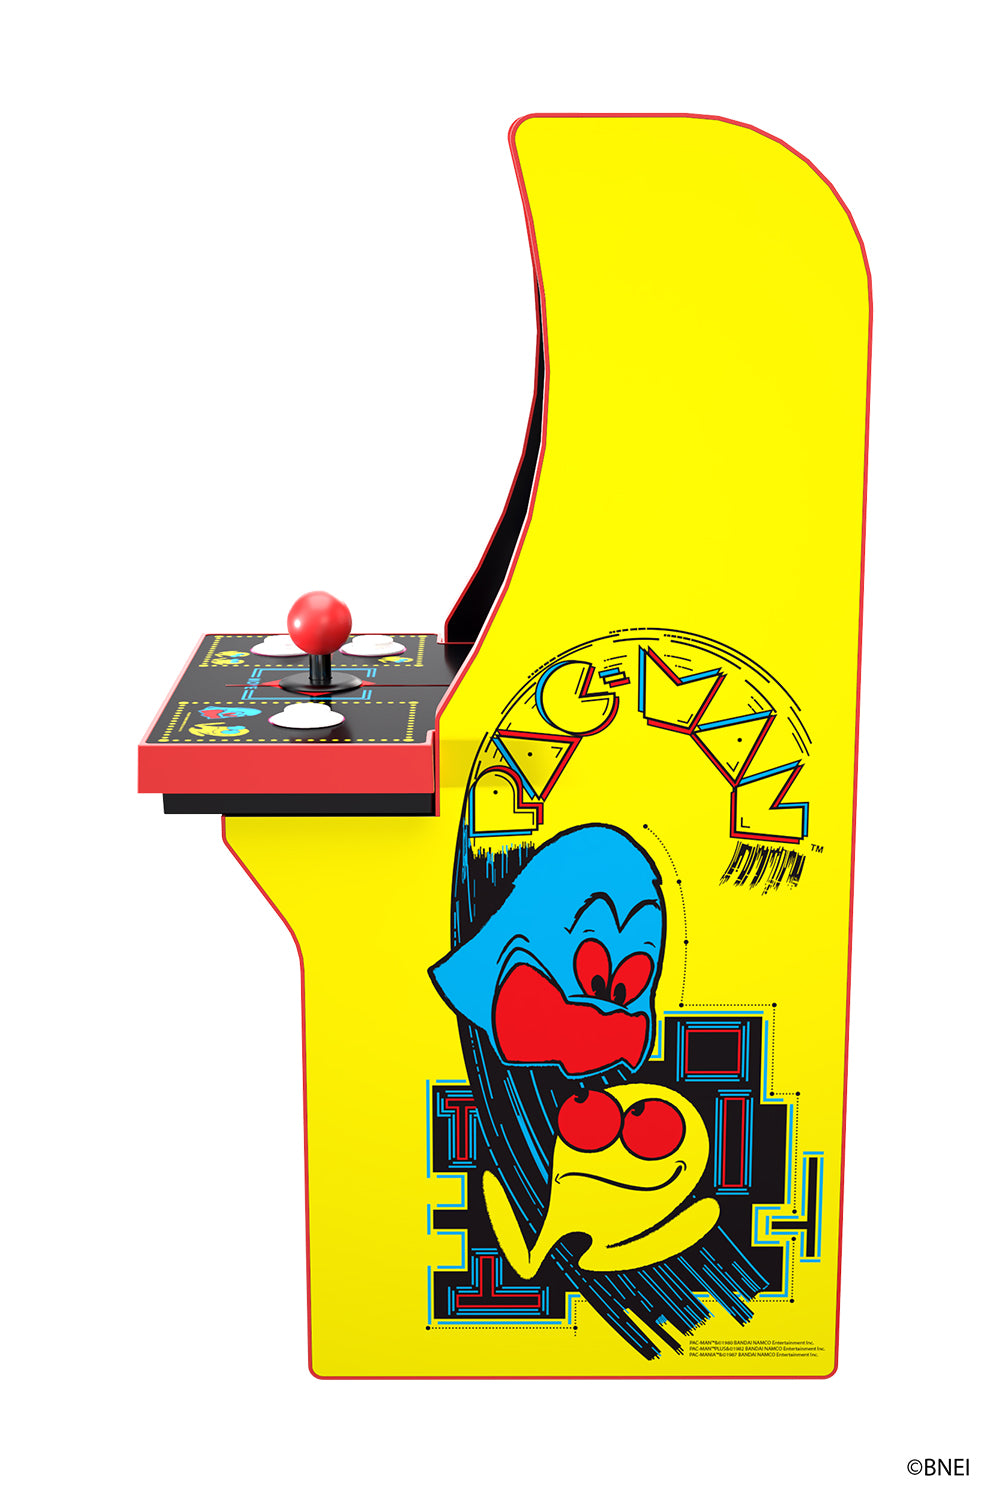 Pac-Man™ Collectorcade™